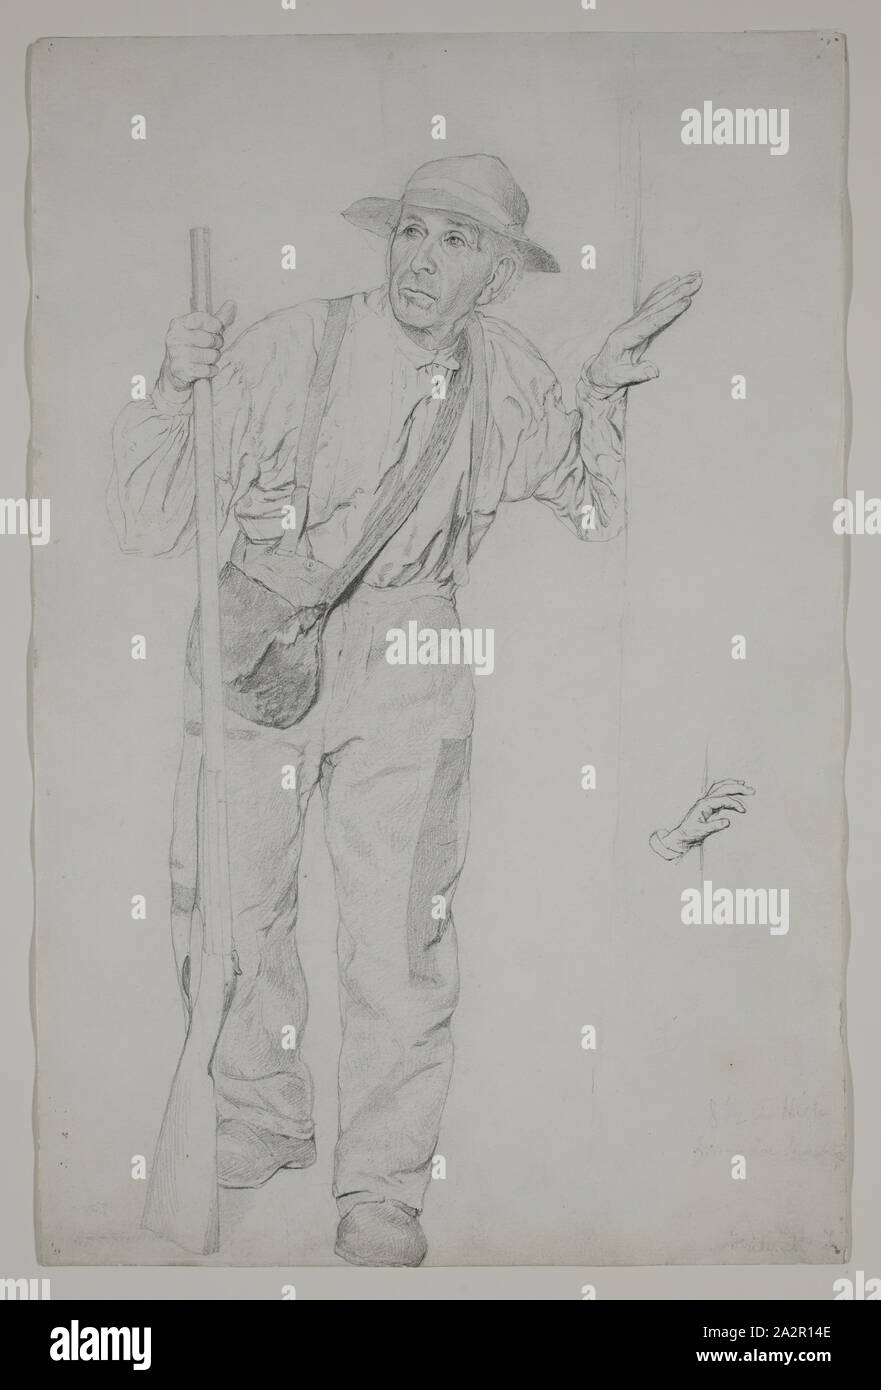 Thomas Hovenden, American, 1840-1895, Landwirt mit einer Pistole, zwischen dem 19. und dem späten 19. Jahrhundert, Graphit, Bleistift Stockfoto